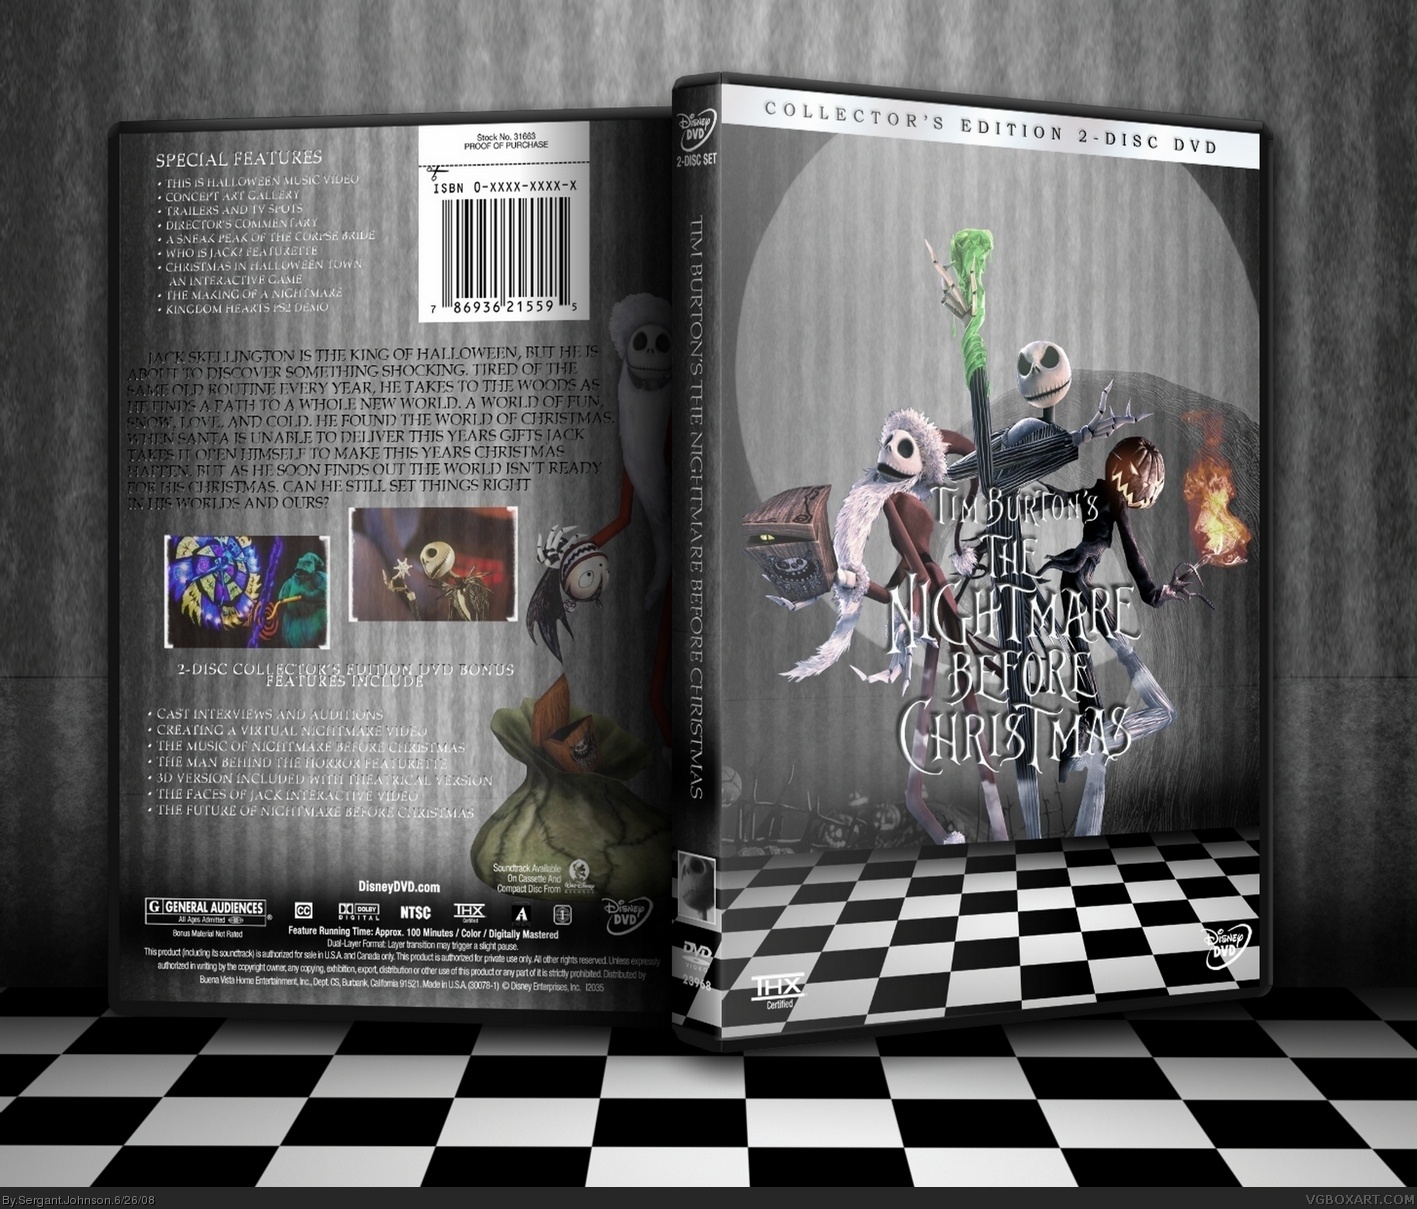 Tim Burton's Nightmare Before Chirstmas box cover